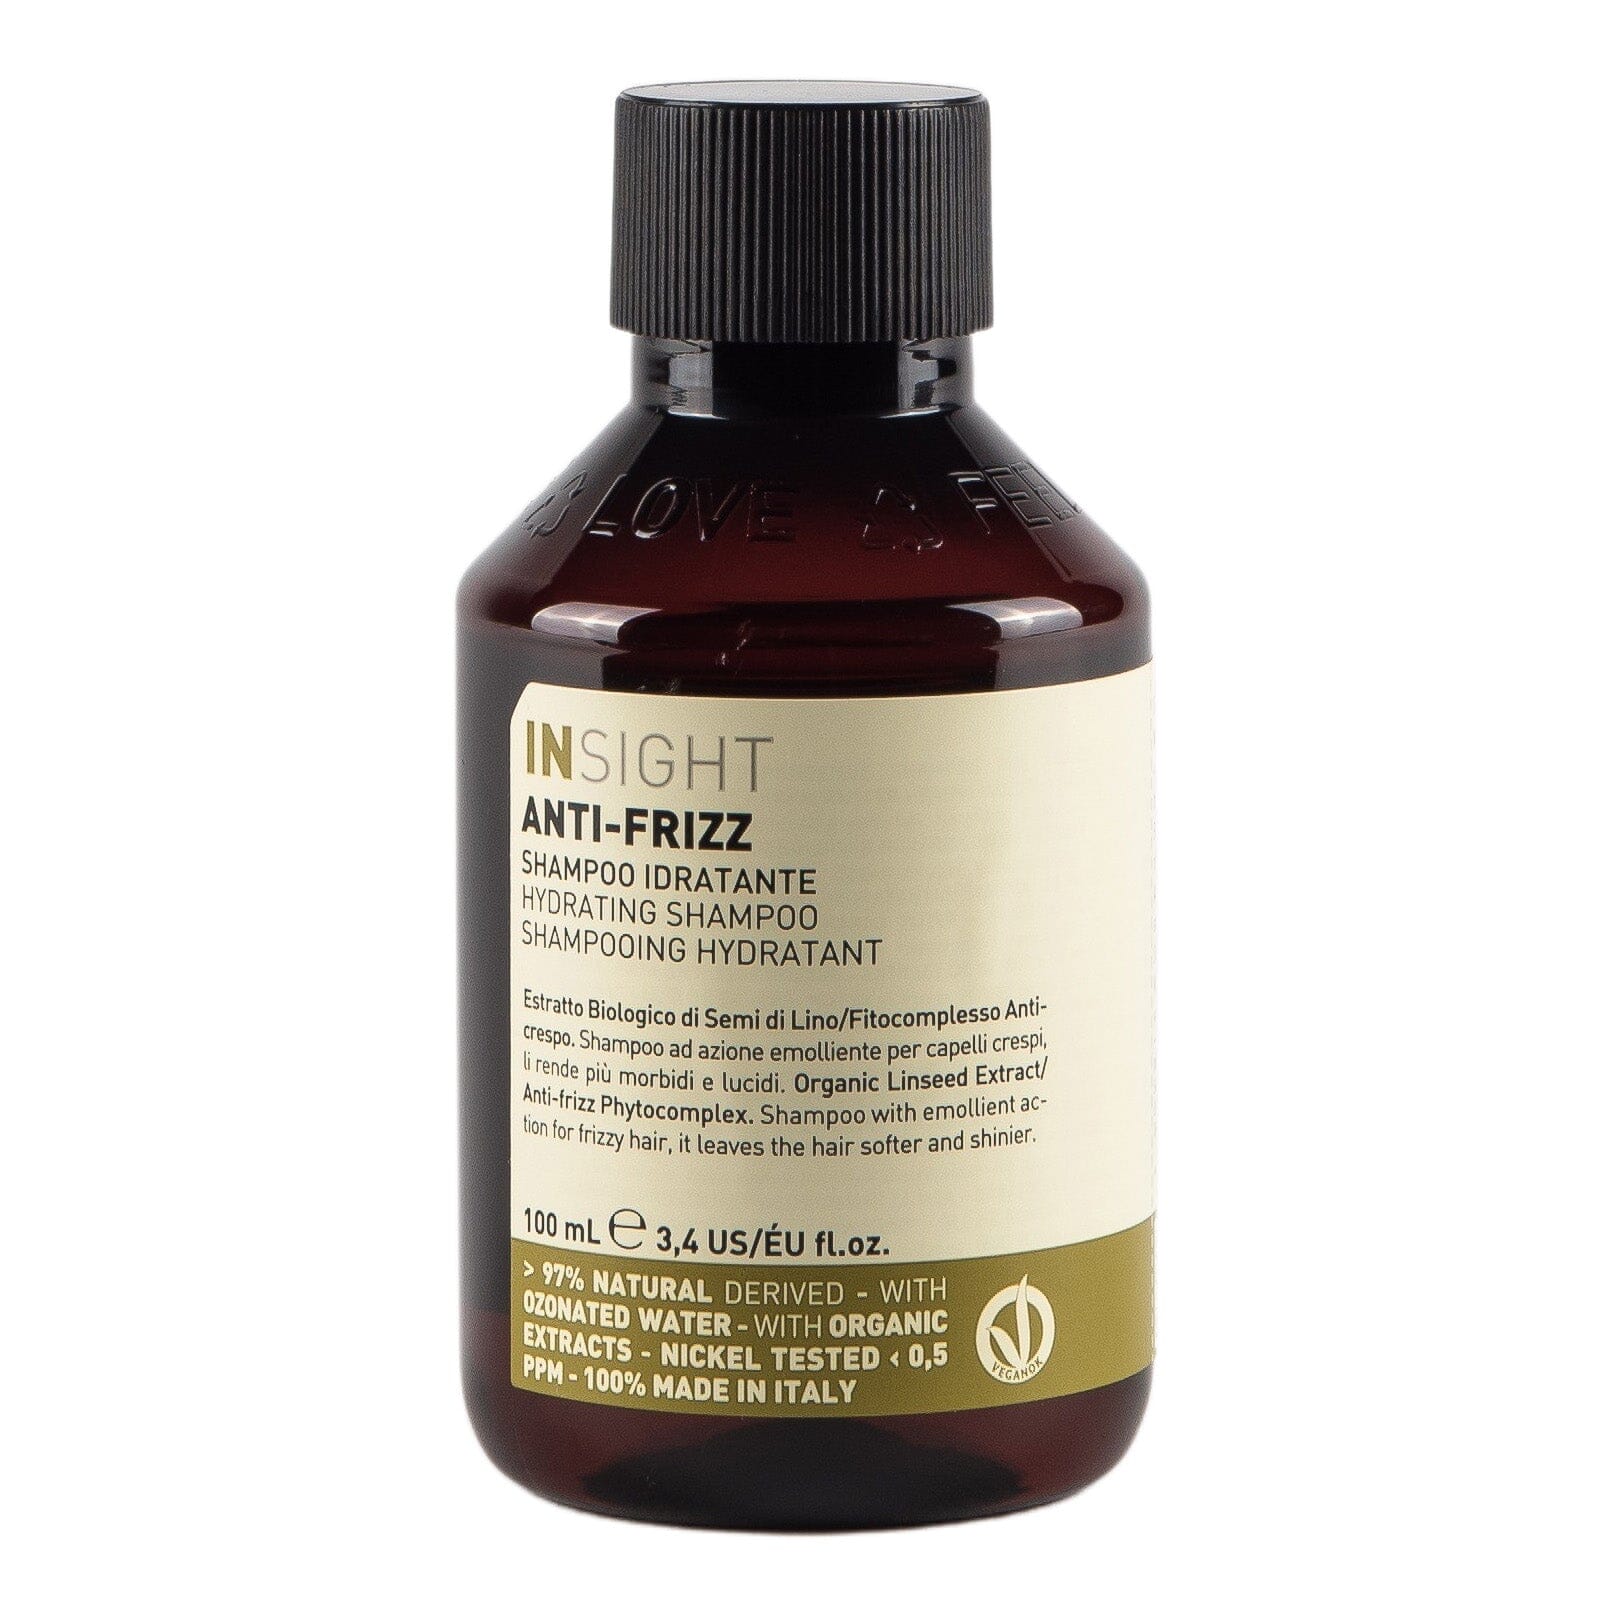 Insight Anti-Frizz - Hydrating sjampo 100 ml